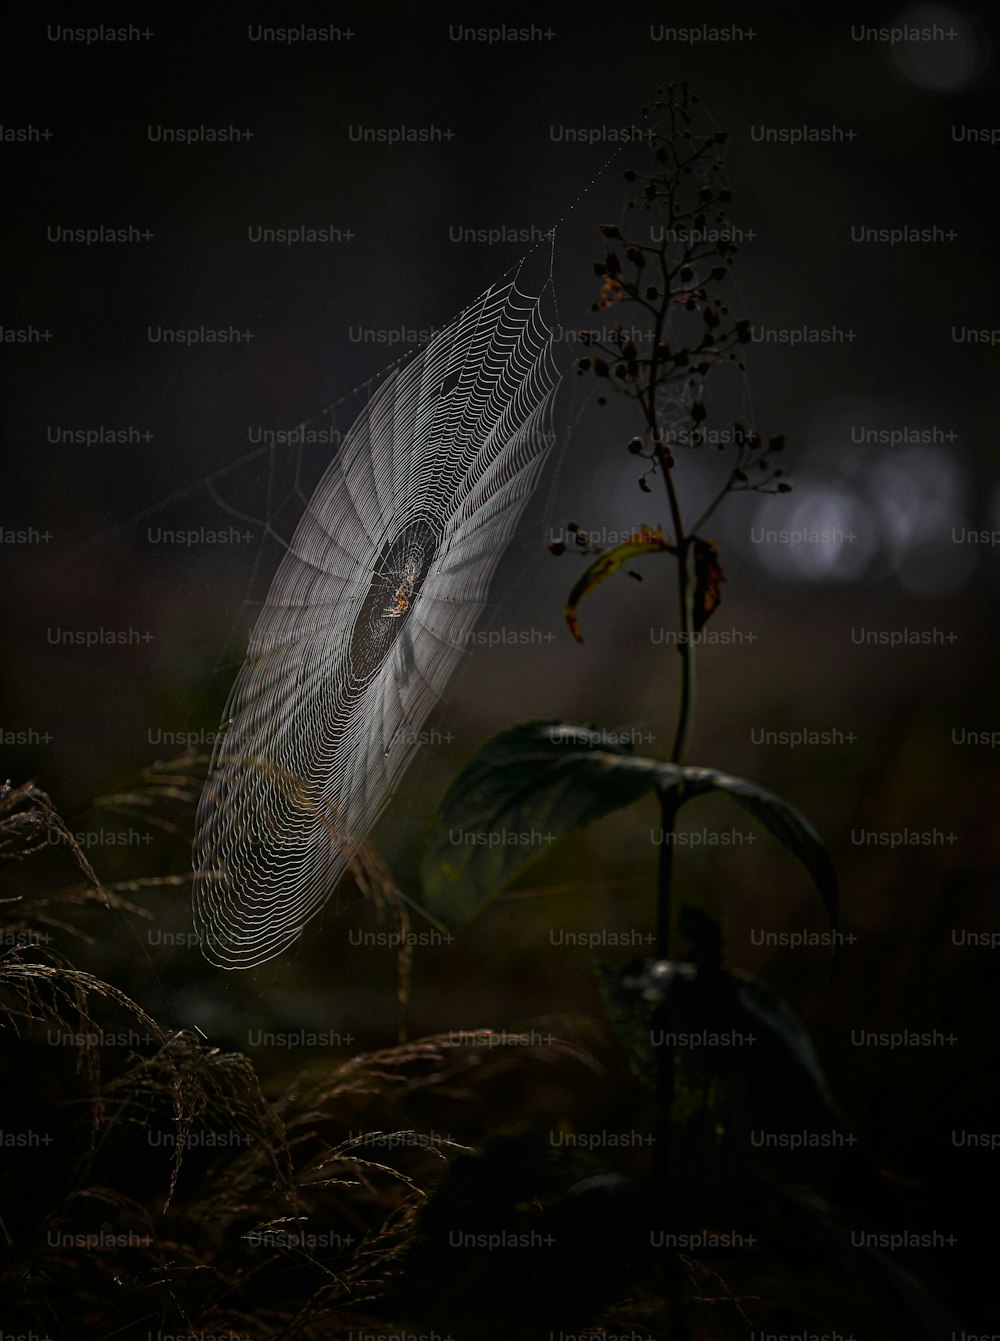 una tela de araña en una planta en la oscuridad